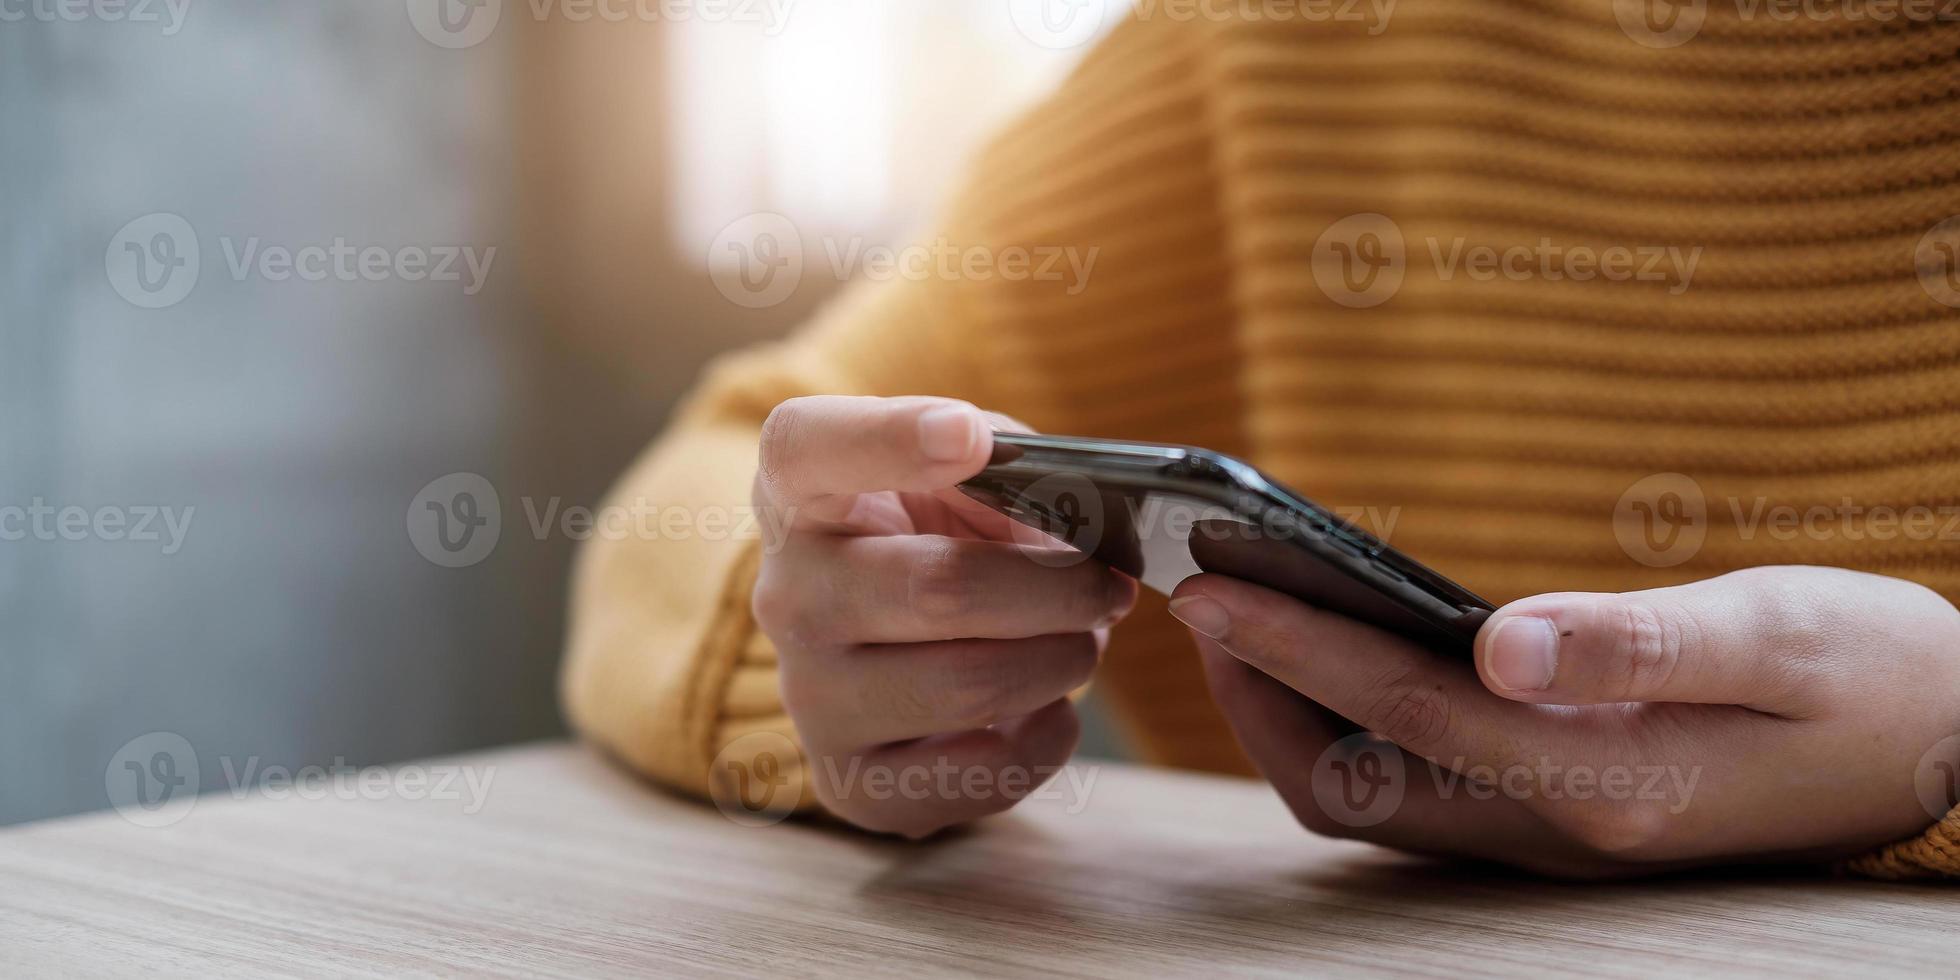 close-upbeeld van een vrouw die mobiele telefoon vasthoudt en gebruikt foto